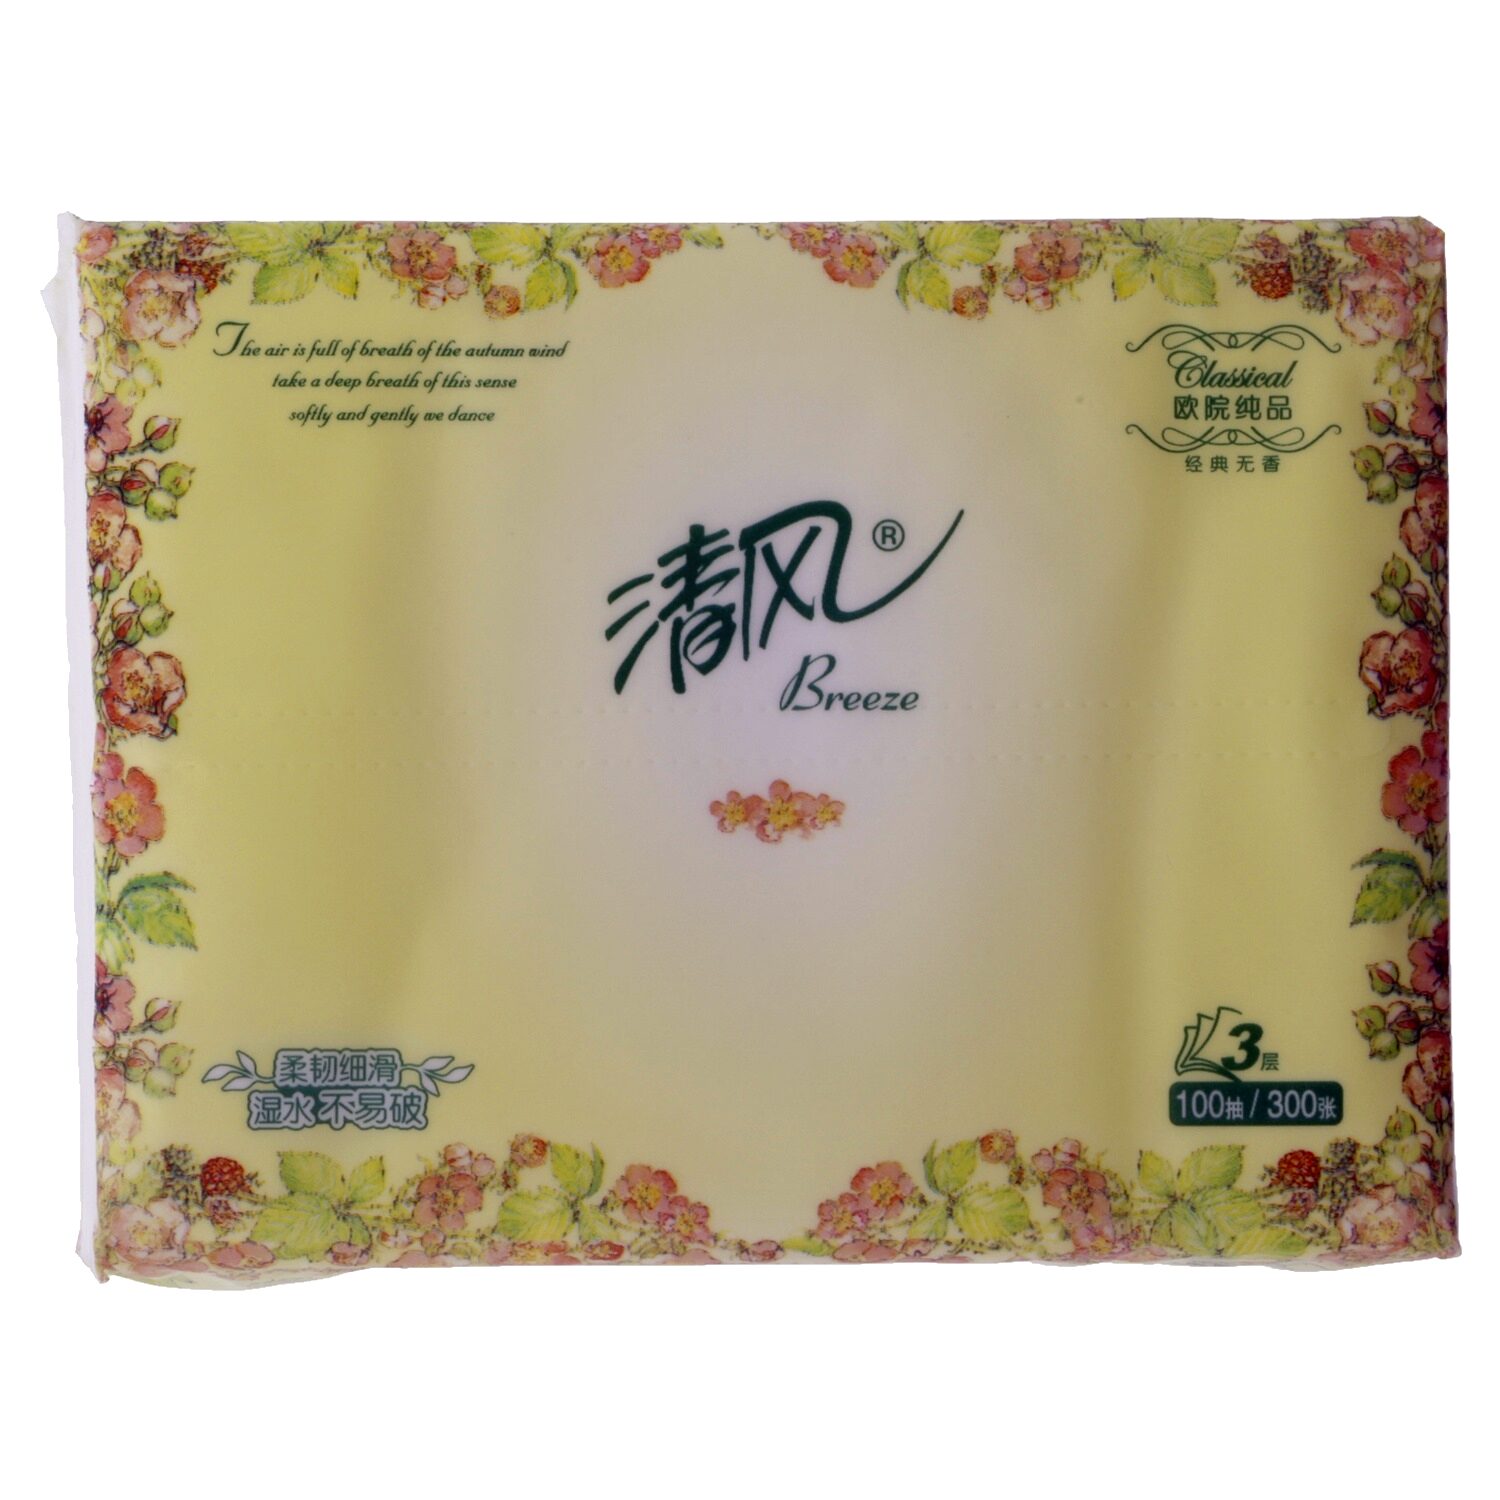 清风牌面巾纸 - Produkto - zh